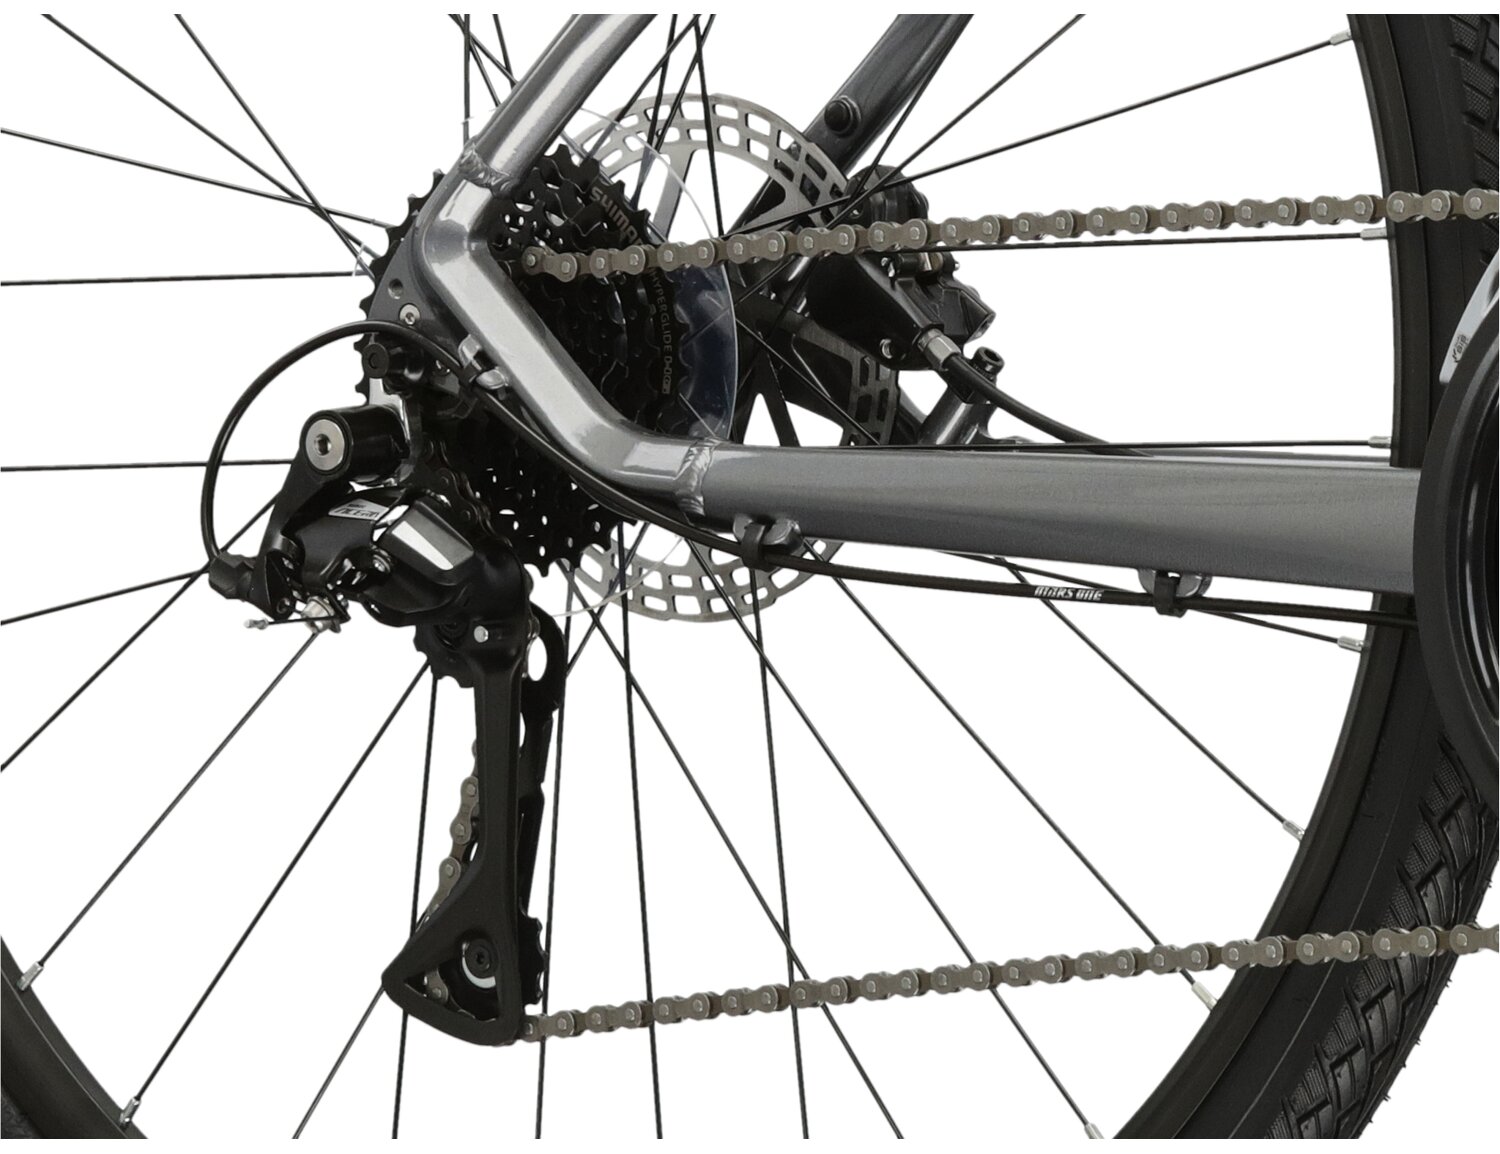  Ośmiorzędowa tylna przerzutka Shimano Acera M360 oraz hydrualiczne hamulce tarczowe w rowerze crossowym Kross Evado 4.0 